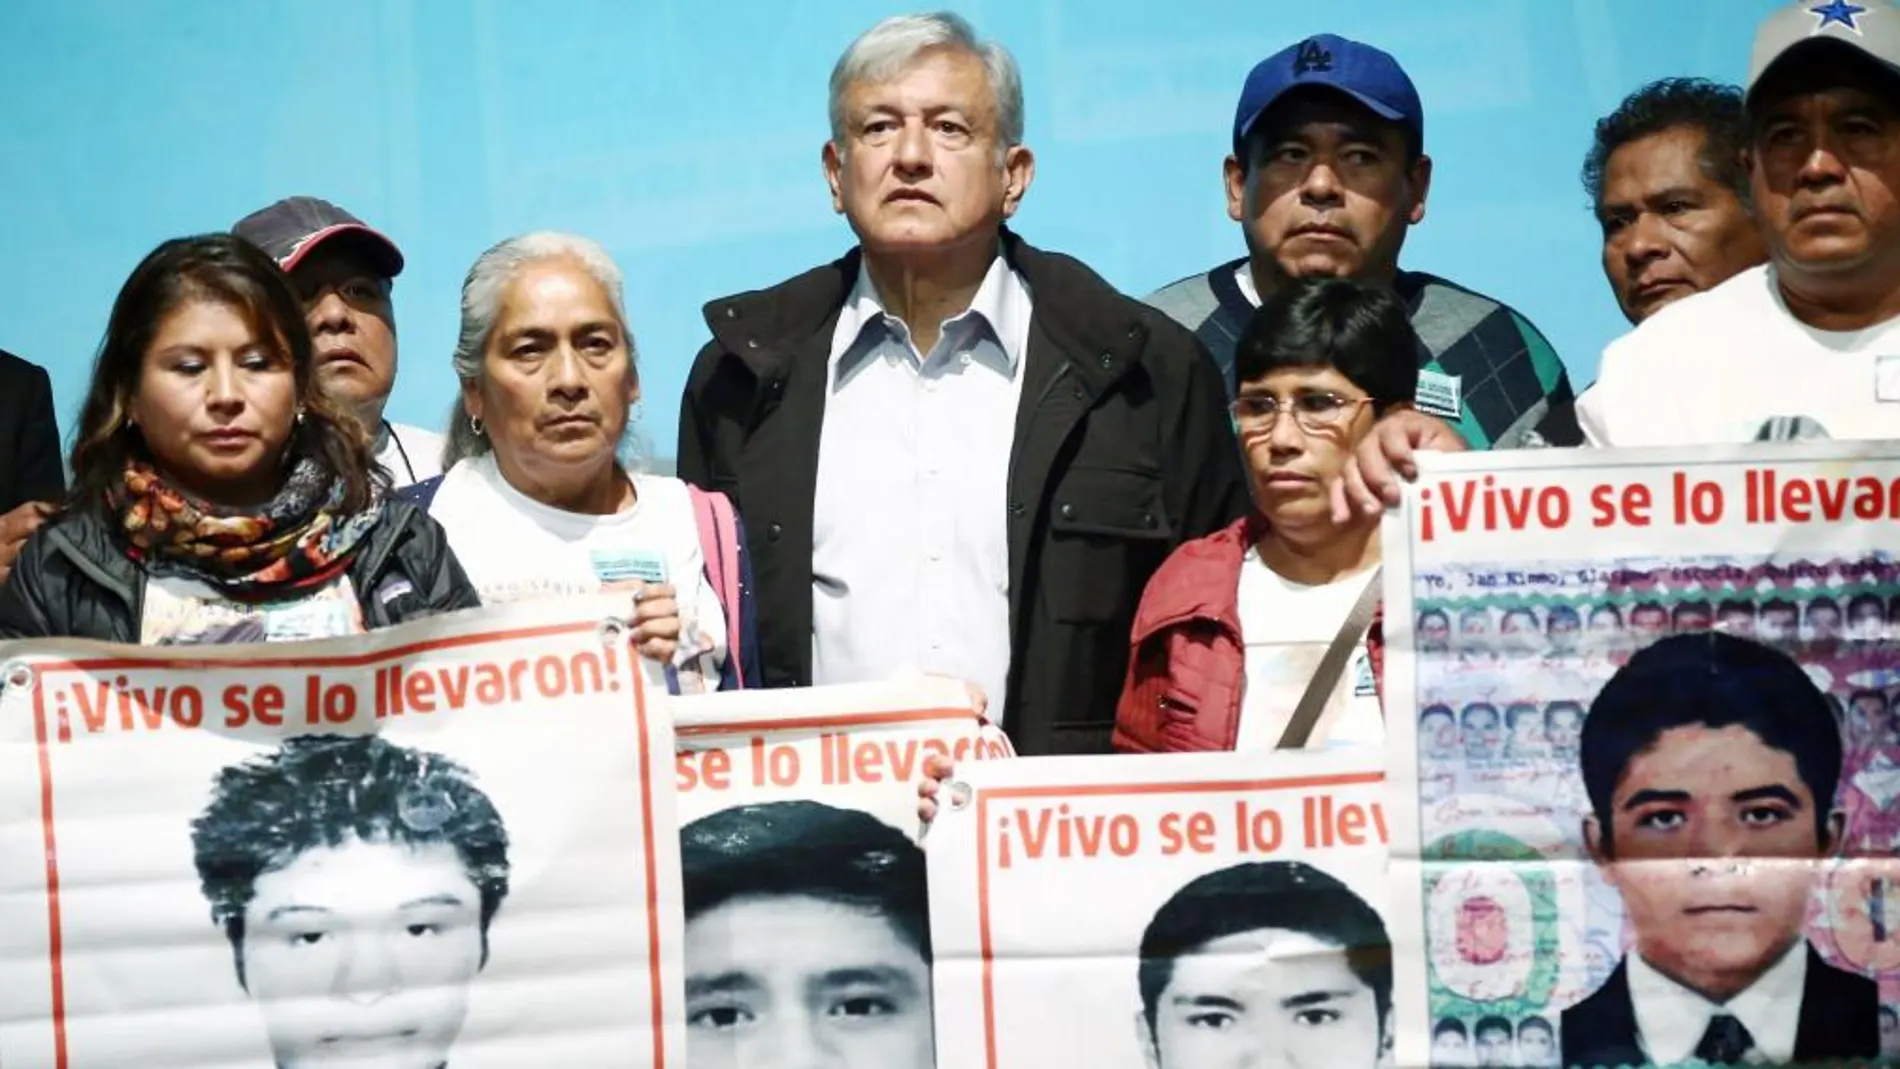 El presidente electo, Andrés Manuel López Obrador, ayer en un acto en Ciudad de México con familiares de los 43 estudiantes desaparecidos